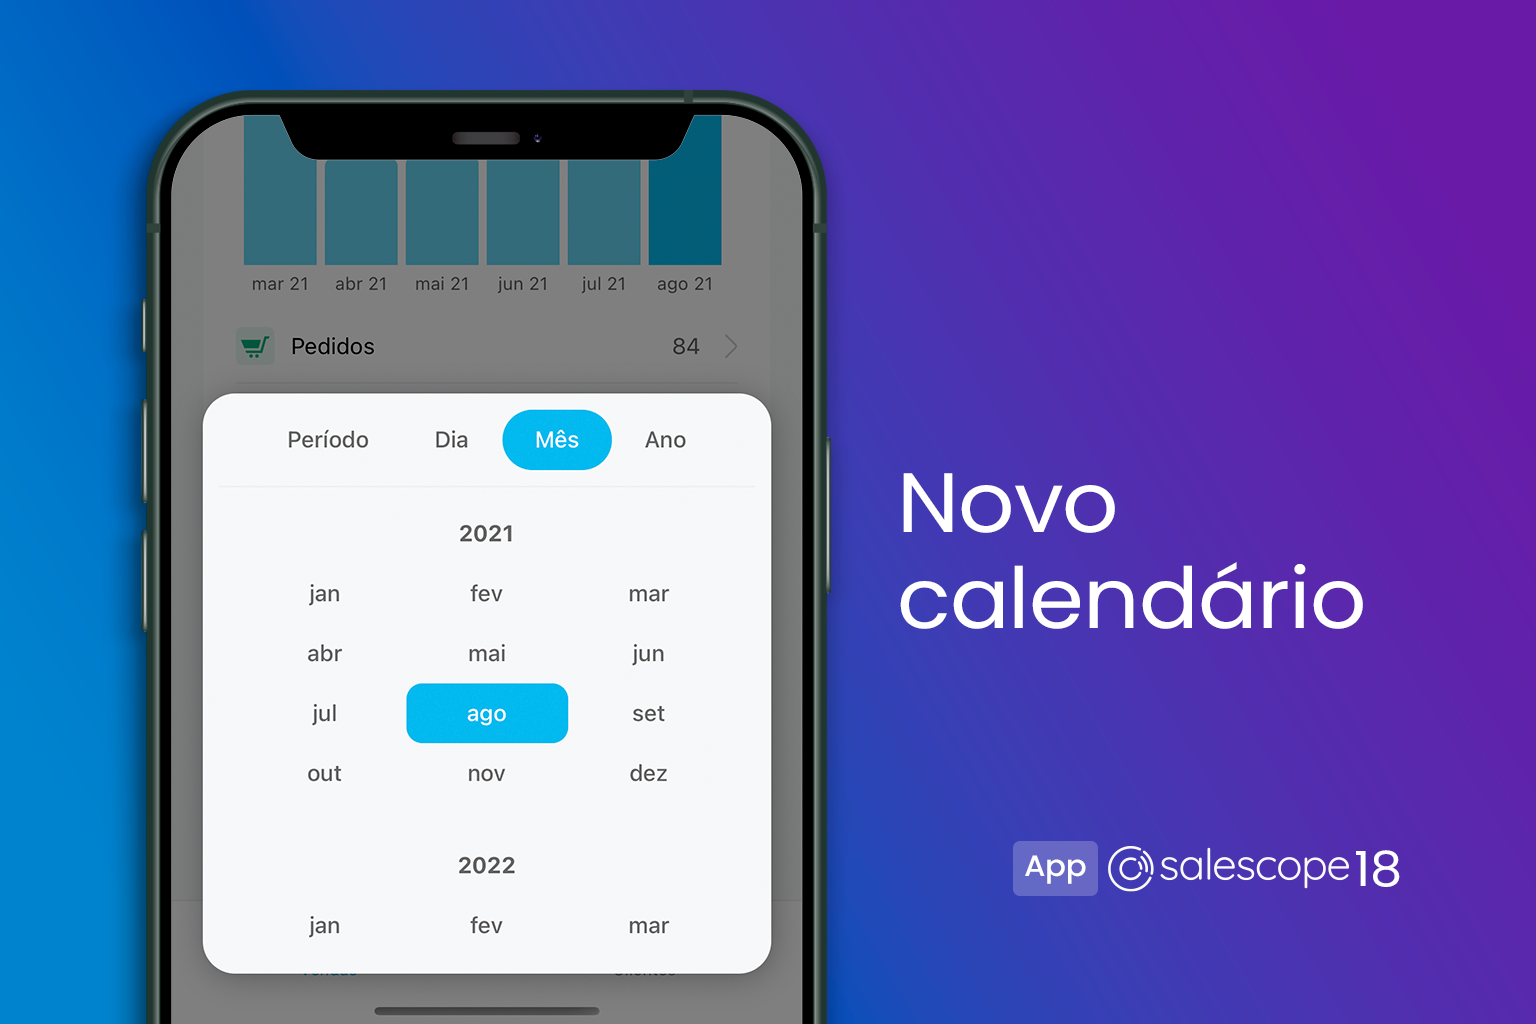 Novo calendário [Salescope App 18]